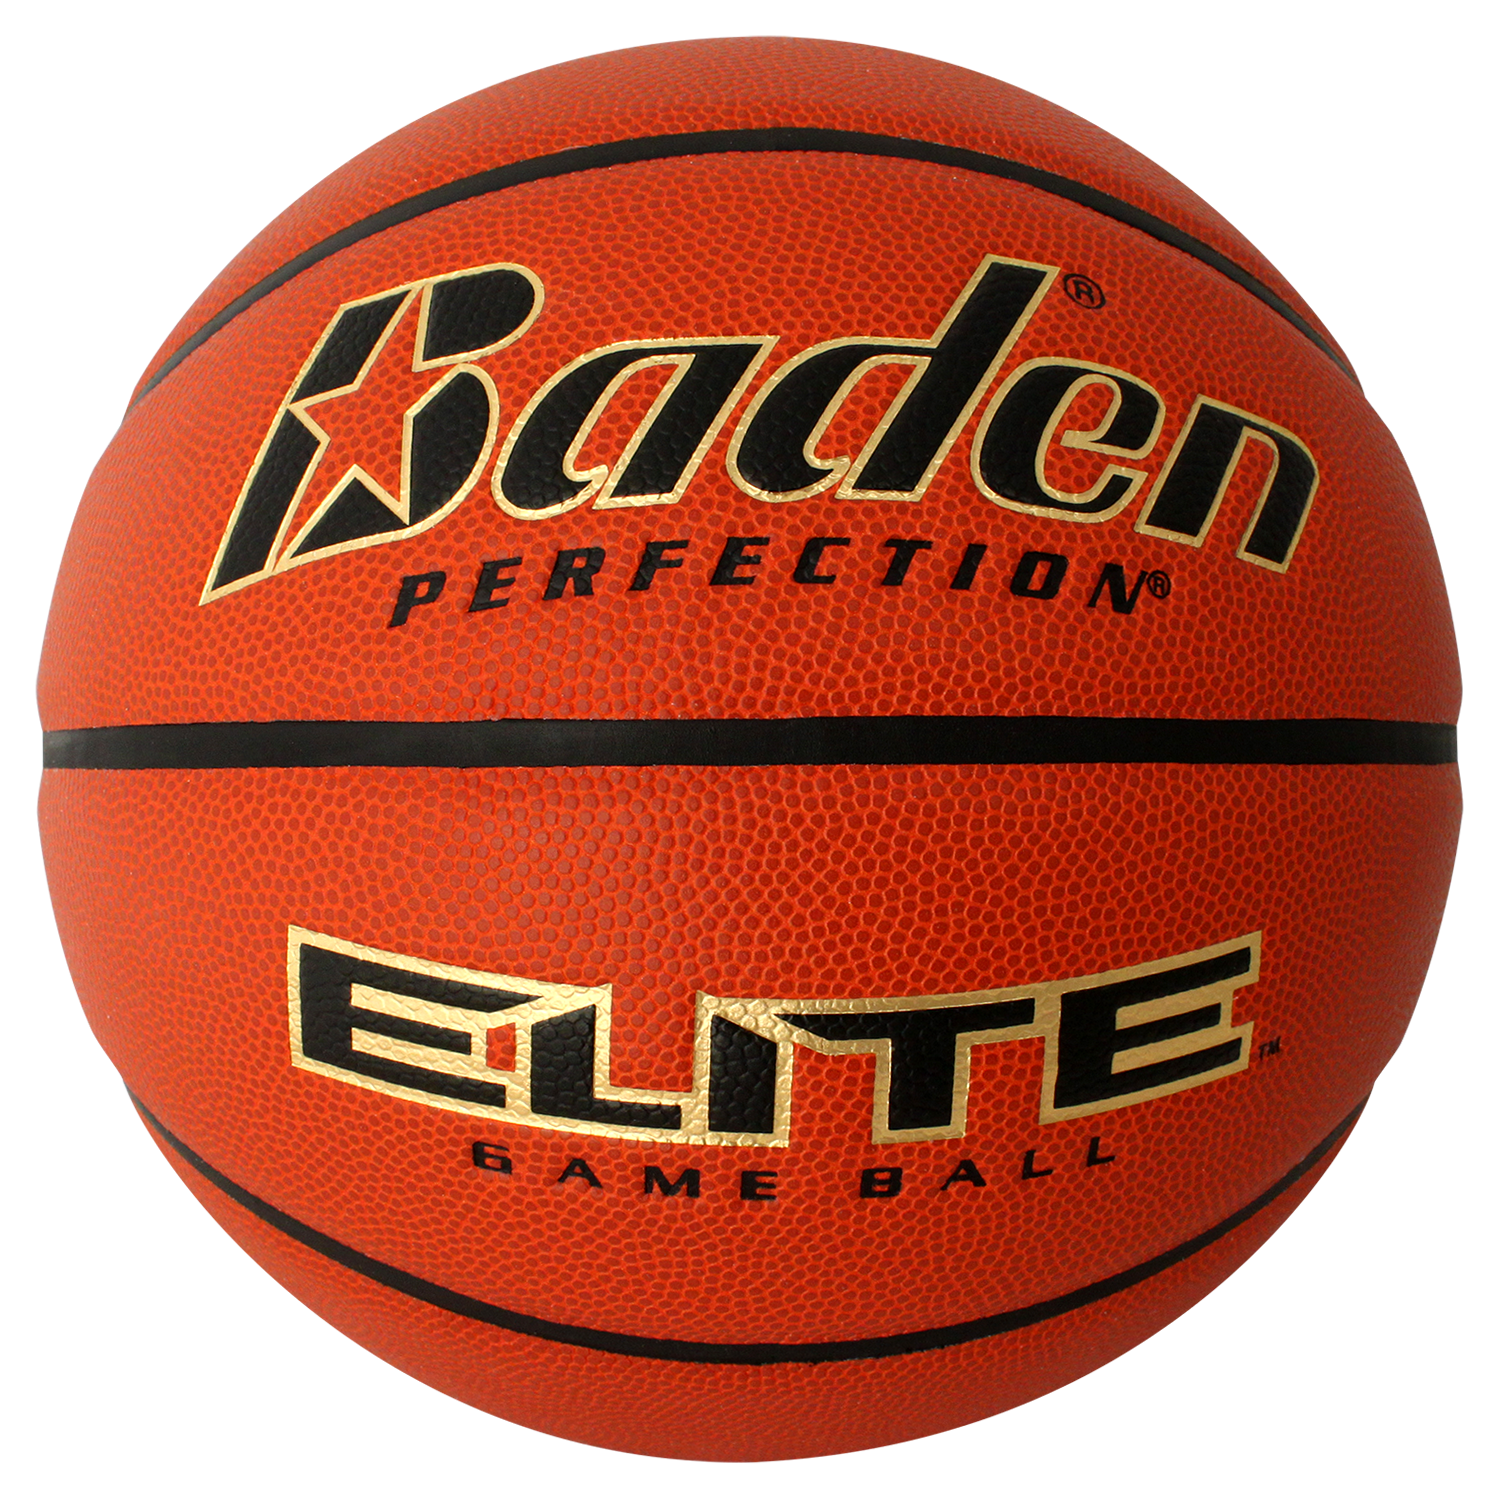 Signed Original Baden Basketball Harlem Globetrotters M